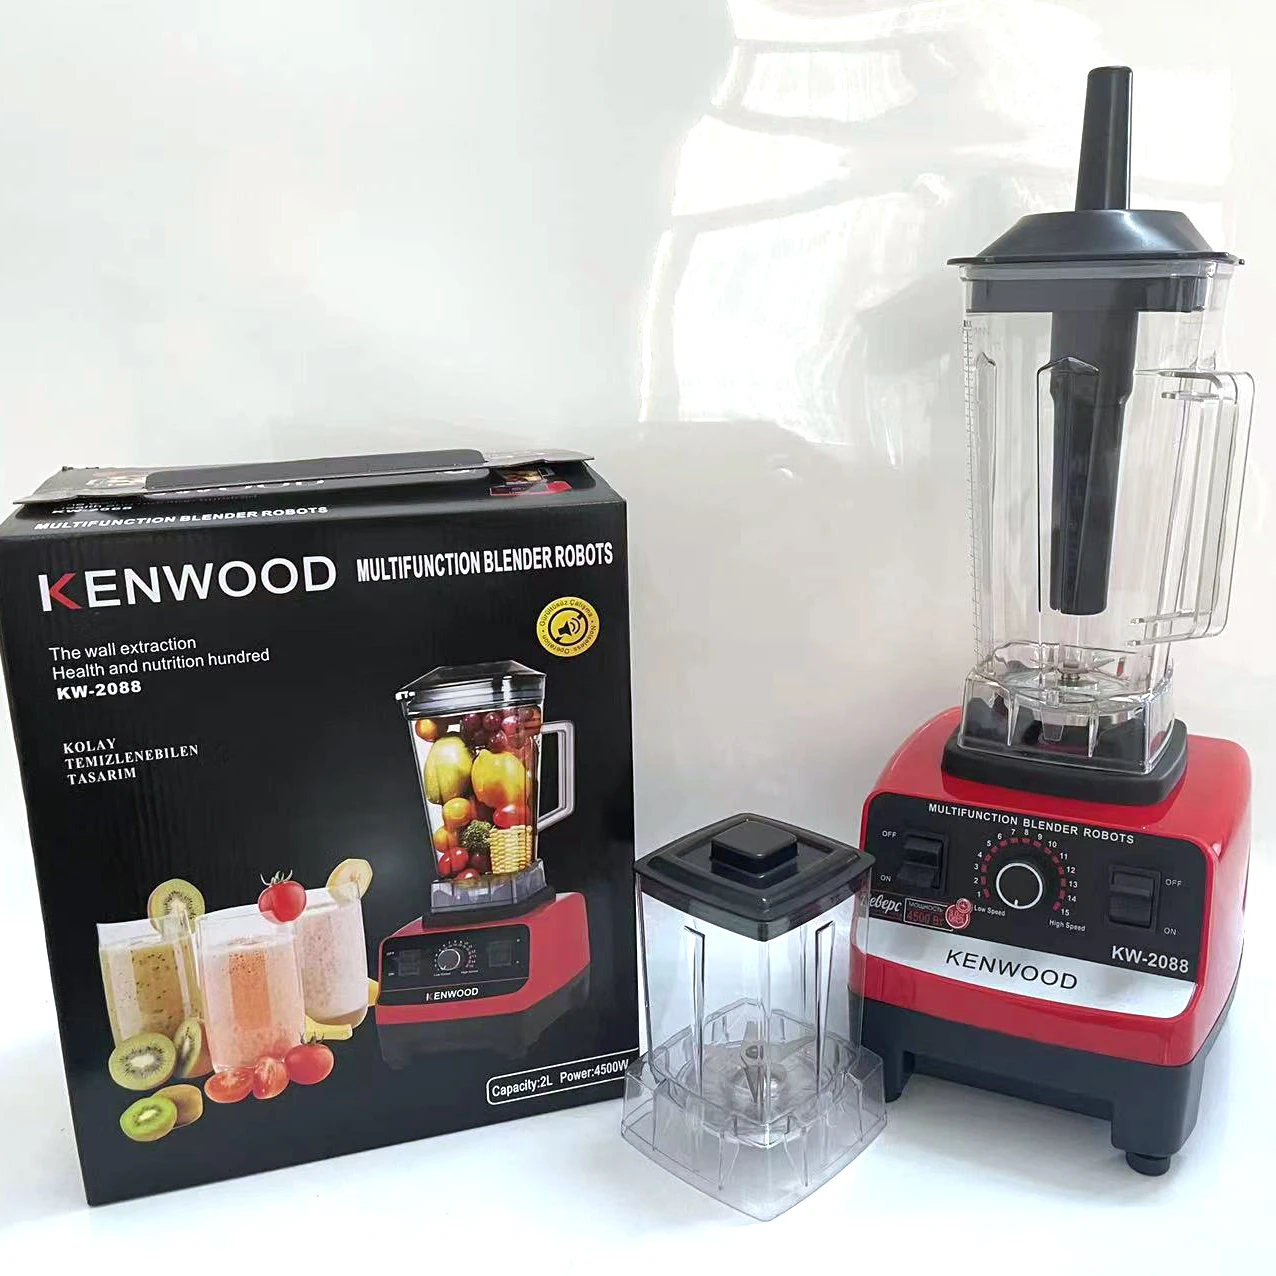 Supermarket hot sale commercial food mixer juice blender 2 in 1 kenwoods blender for household